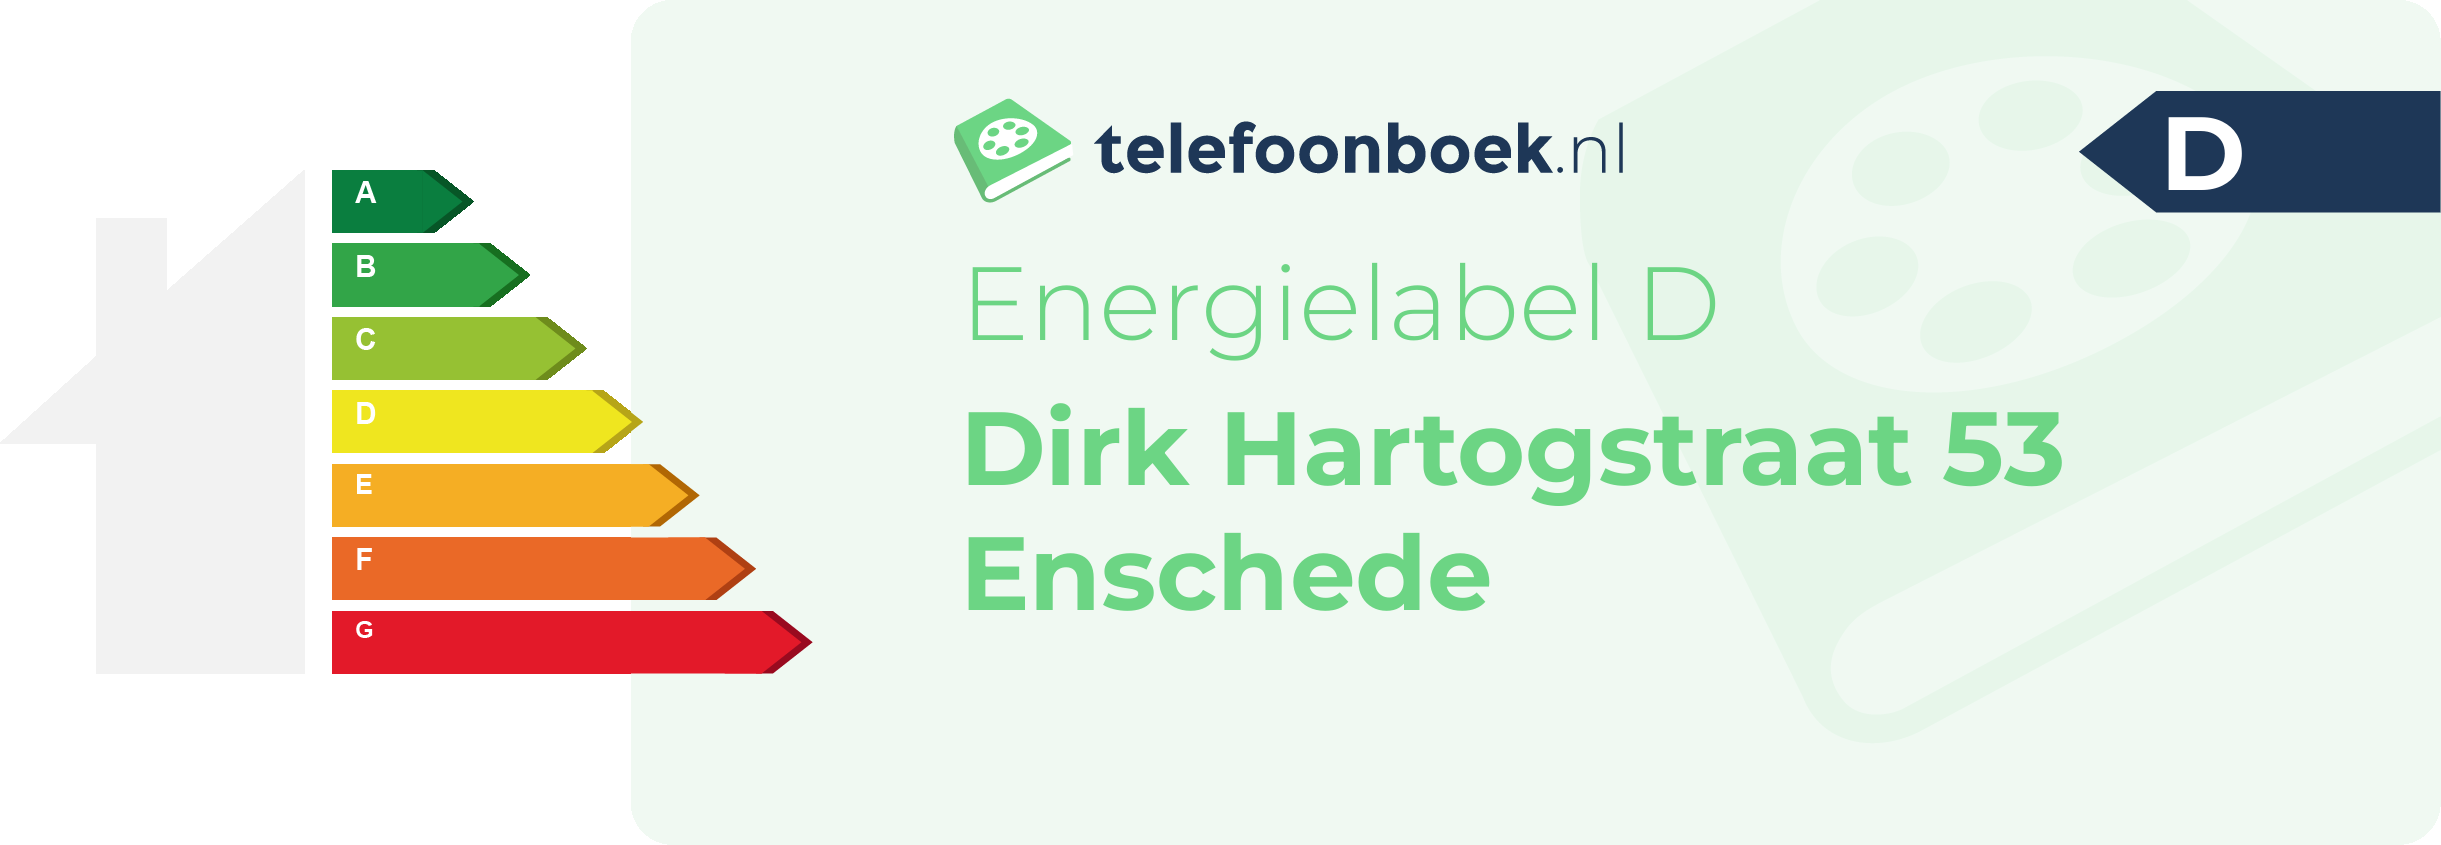 Energielabel Dirk Hartogstraat 53 Enschede